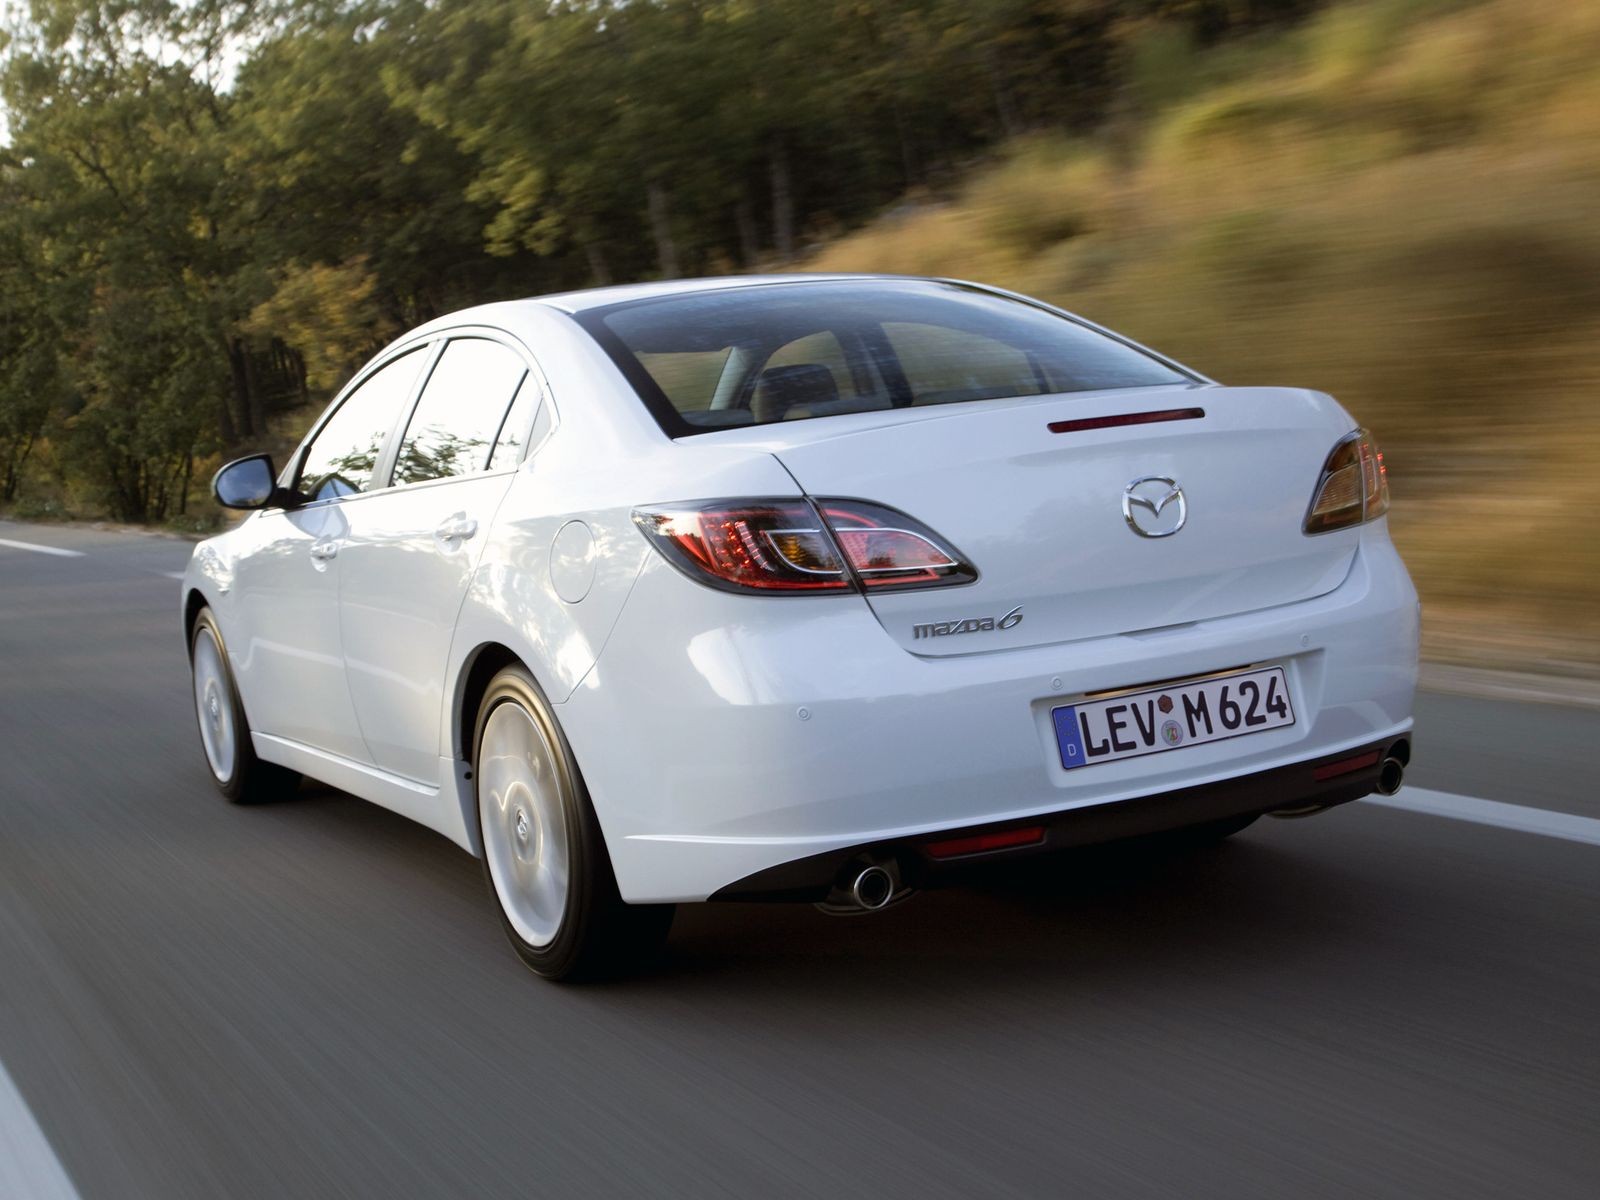 Что сохранила, утратила и приобрела Mazda6 нового поколения? — ДРАЙВ